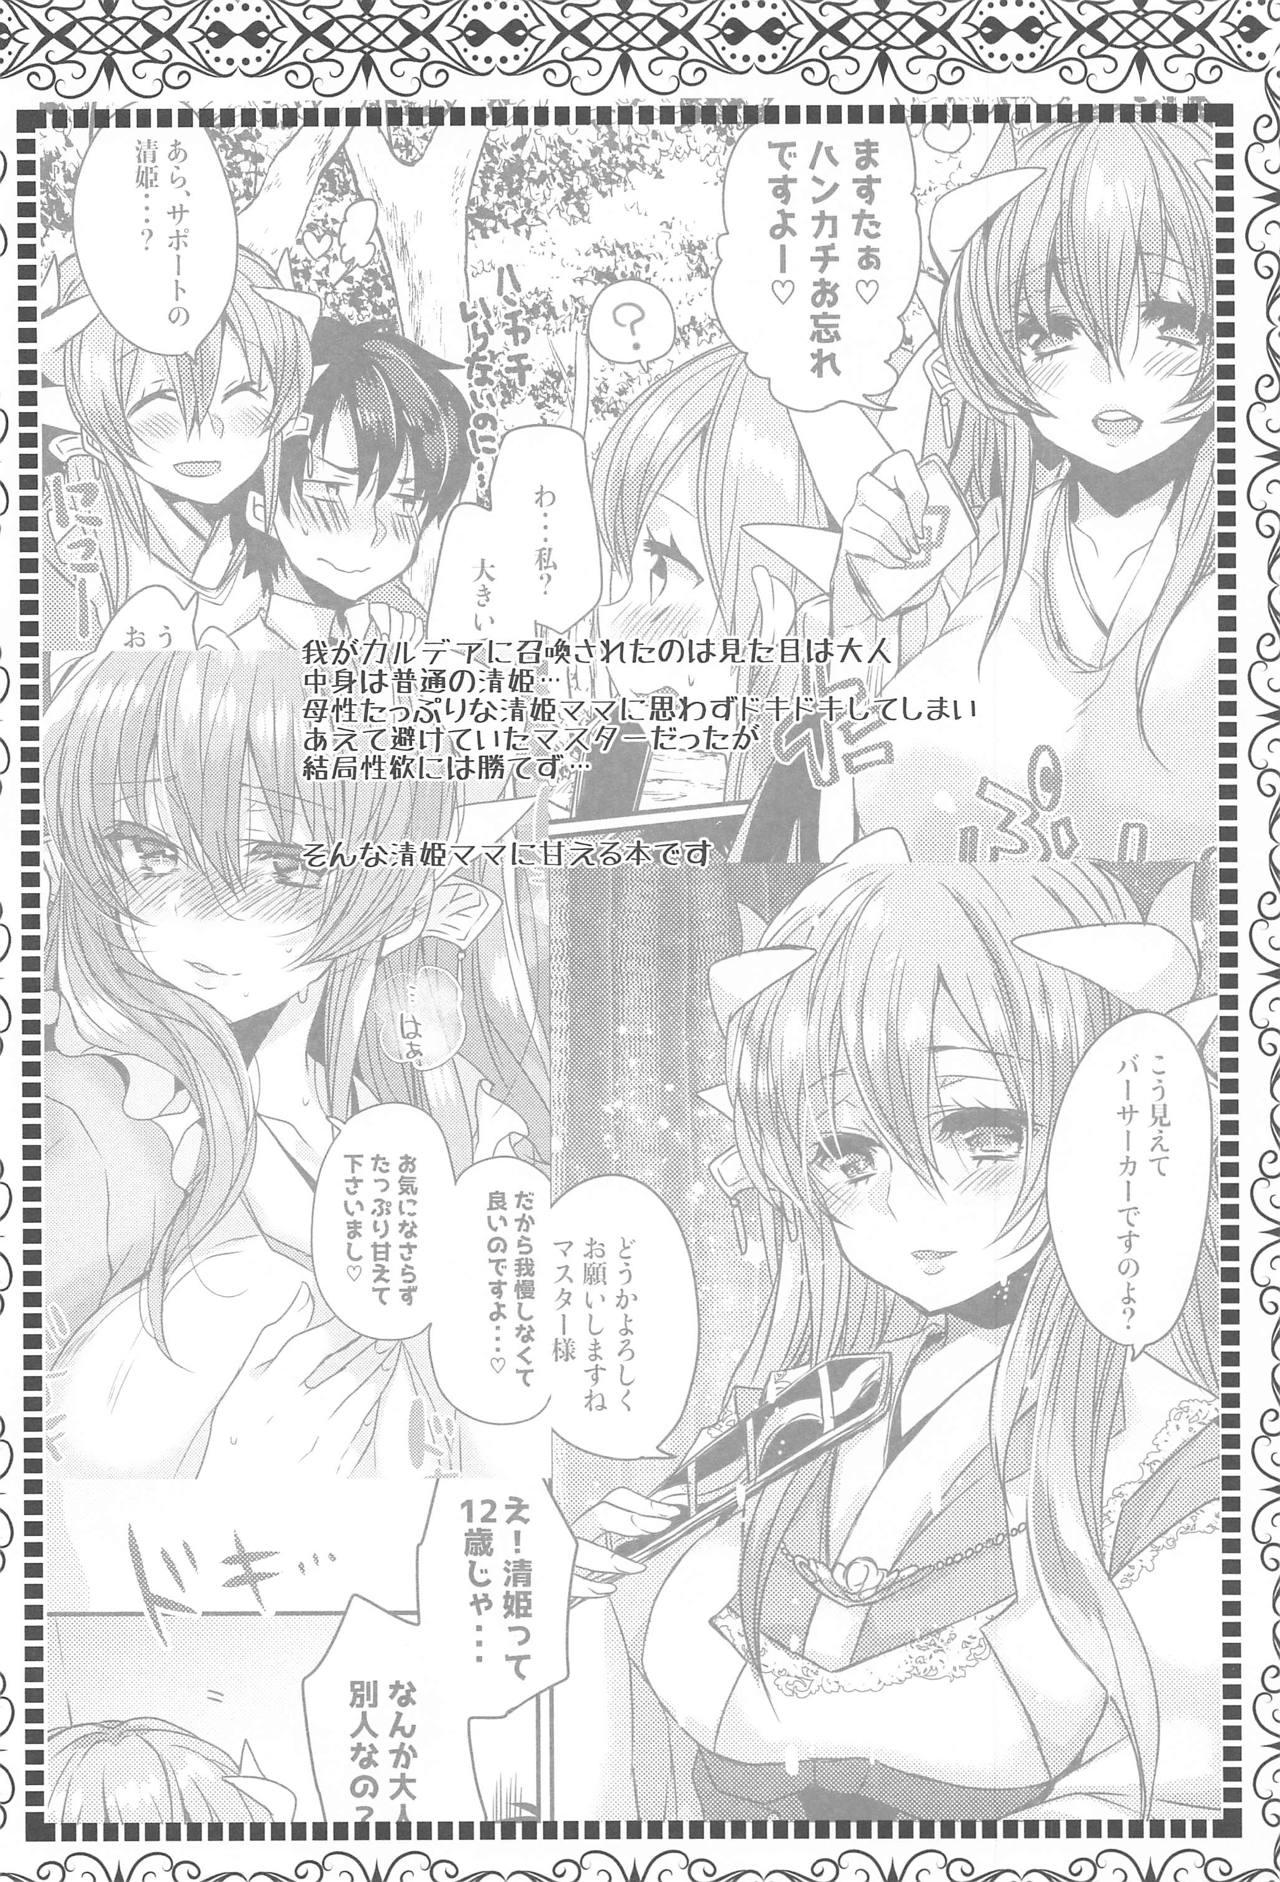 Consolo Uchi no Kiyohime wa Mama 2 - Fate grand order Upskirt - Page 3